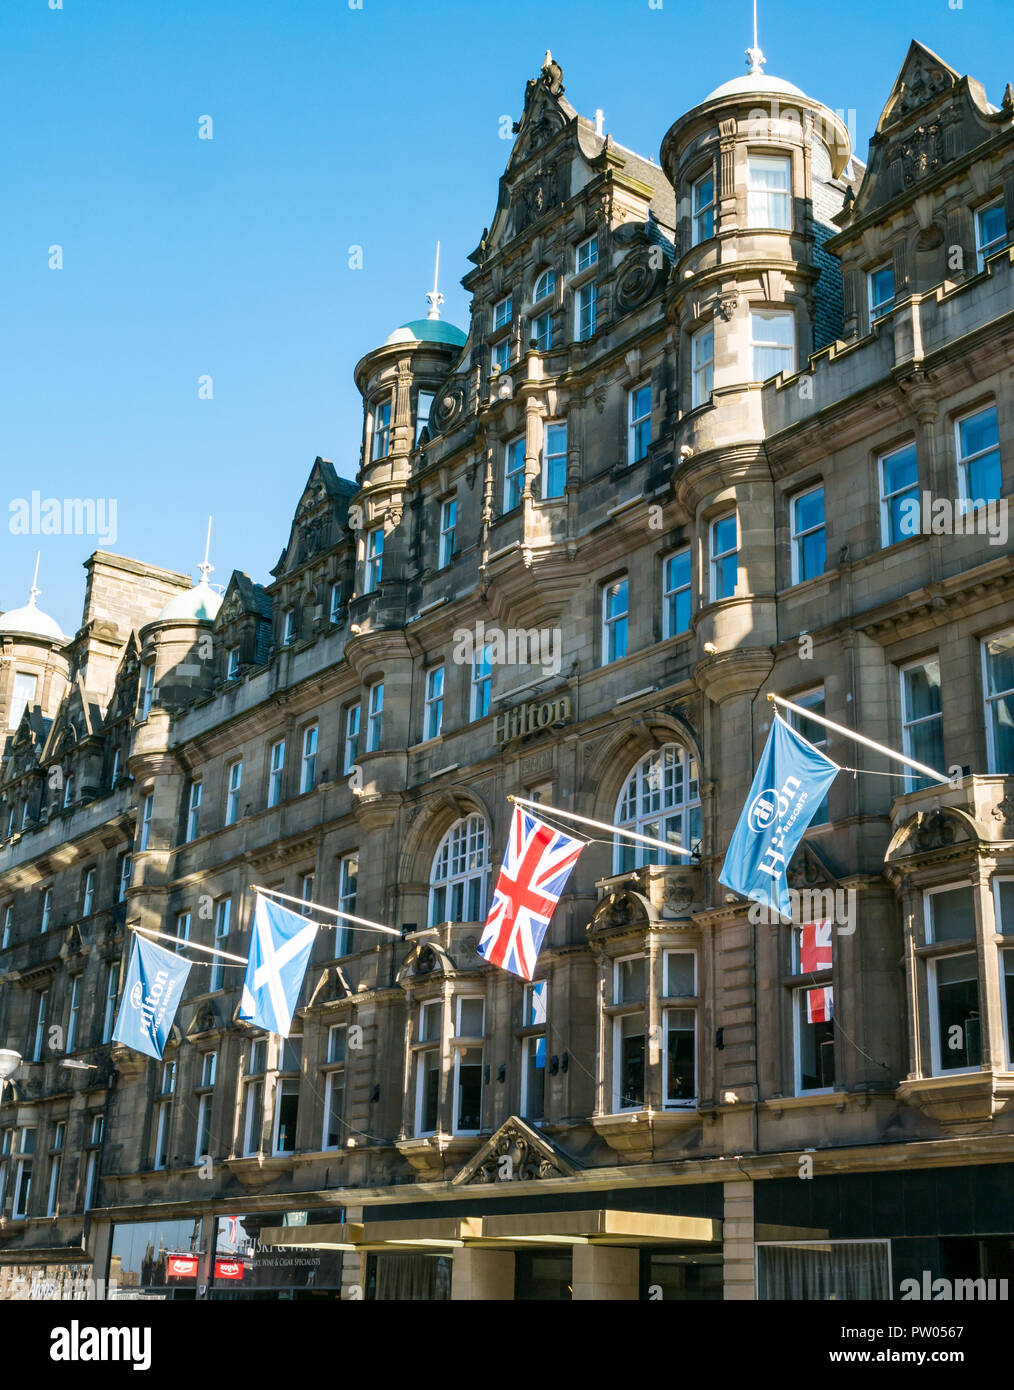 Grande demeure de style baronial écossais bâtiment maintenant Hilton Hôtel Carlton, North Bridge, Edinburgh, Scotland, UK avec des drapeaux Banque D'Images